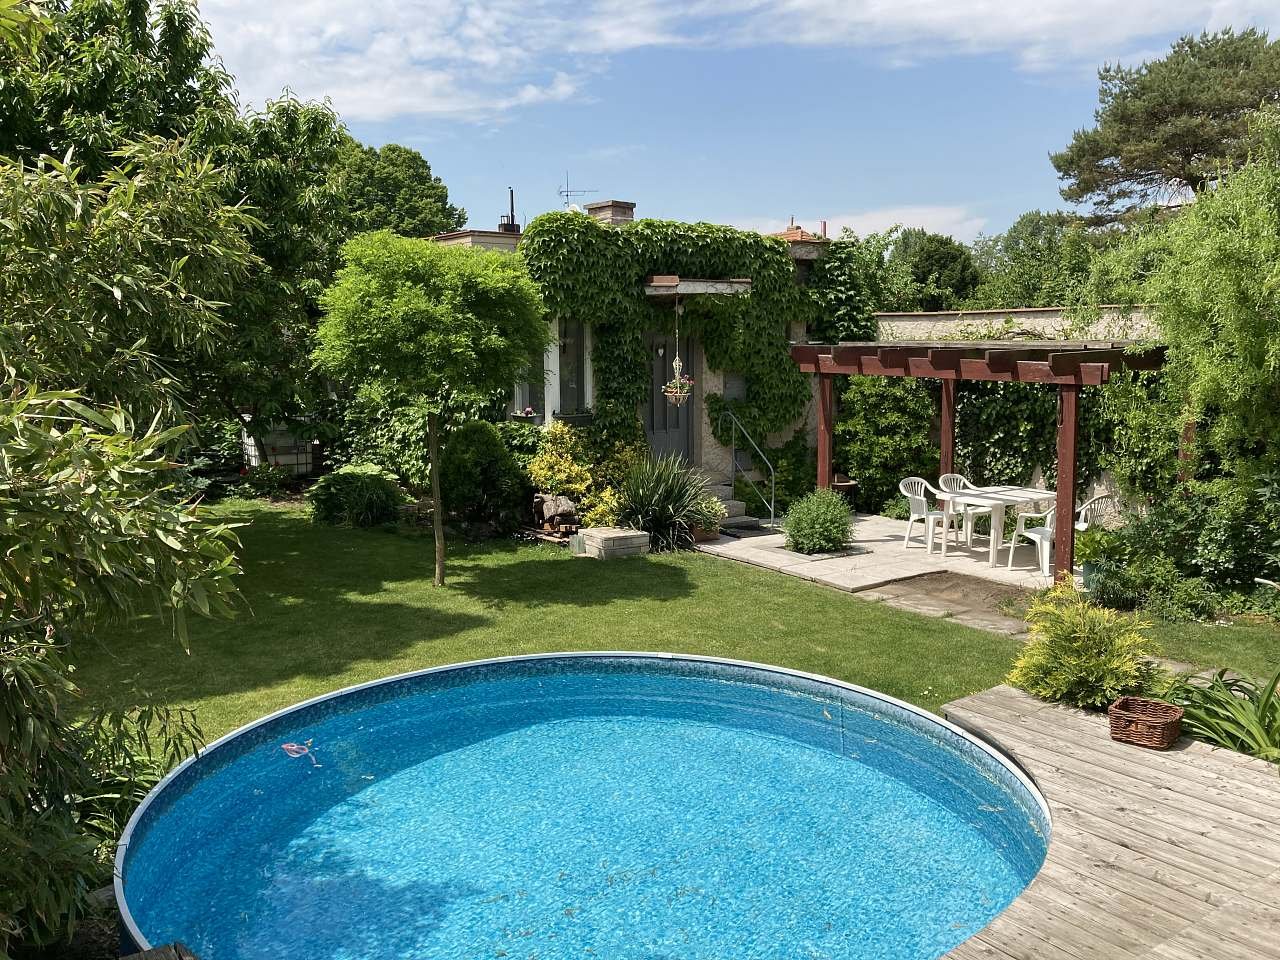 Uma pequena piscina no jardim com um apartamento e uma pérgula aberta